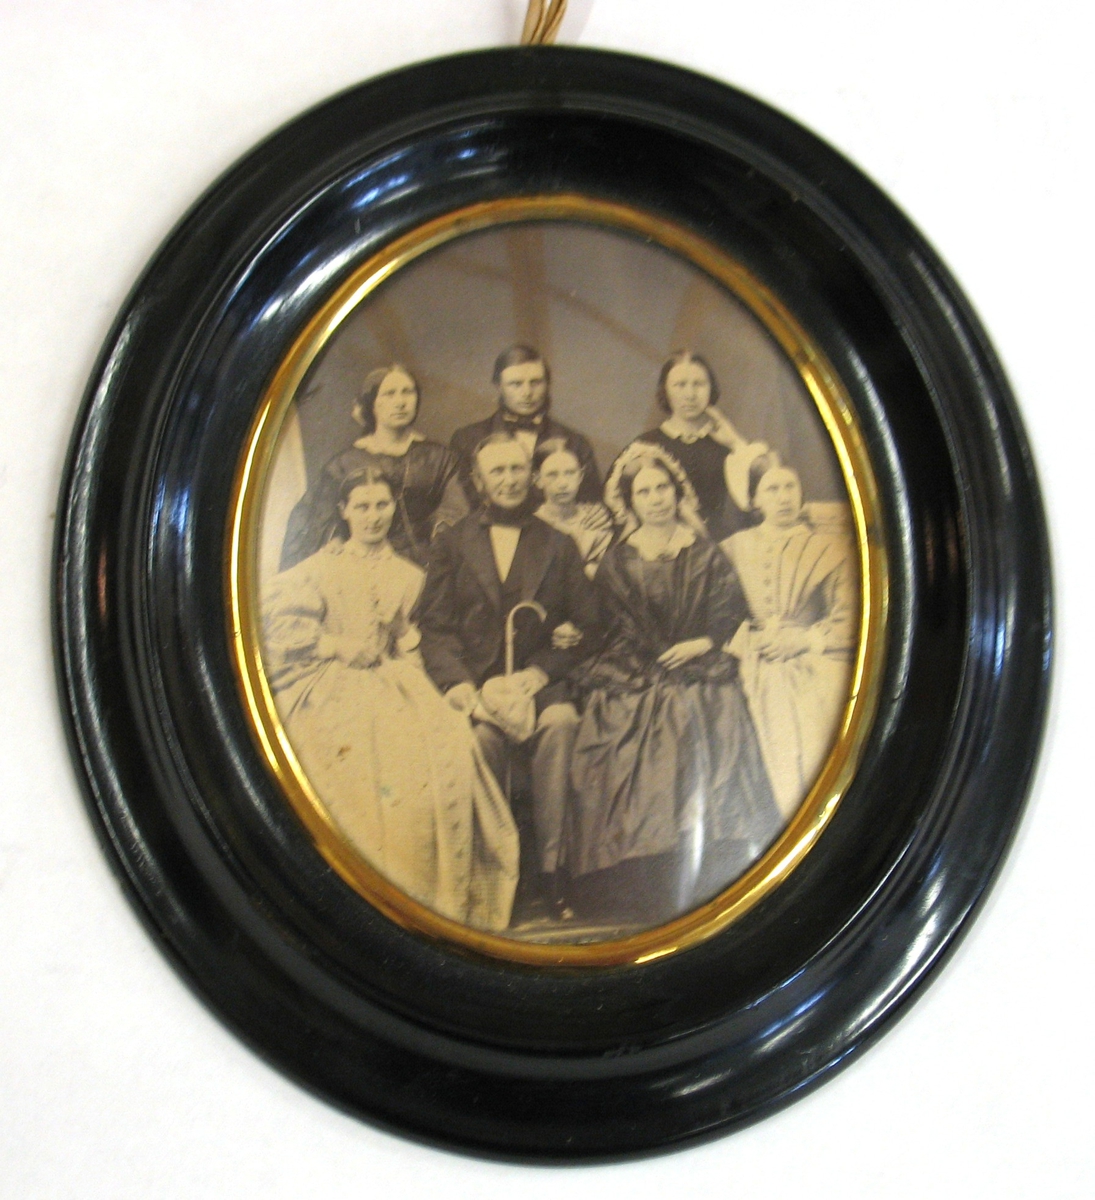 Motiv/dekor: Familjeporträtt (8 personer).
Svart oval ram med guldlist.